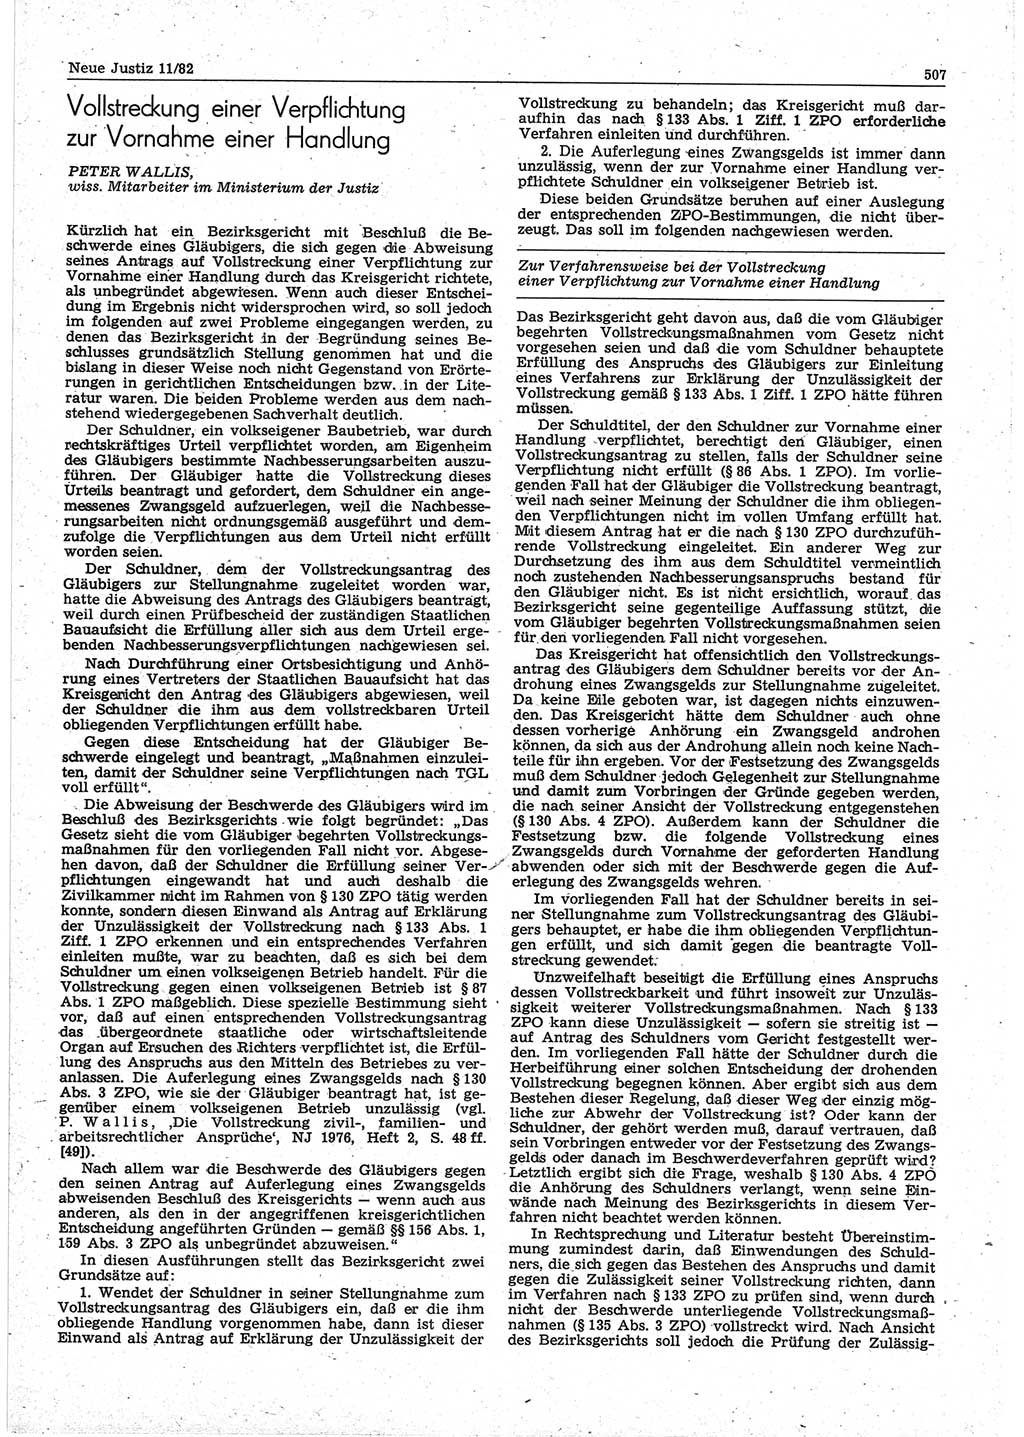 Neue Justiz (NJ), Zeitschrift für sozialistisches Recht und Gesetzlichkeit [Deutsche Demokratische Republik (DDR)], 36. Jahrgang 1982, Seite 507 (NJ DDR 1982, S. 507)